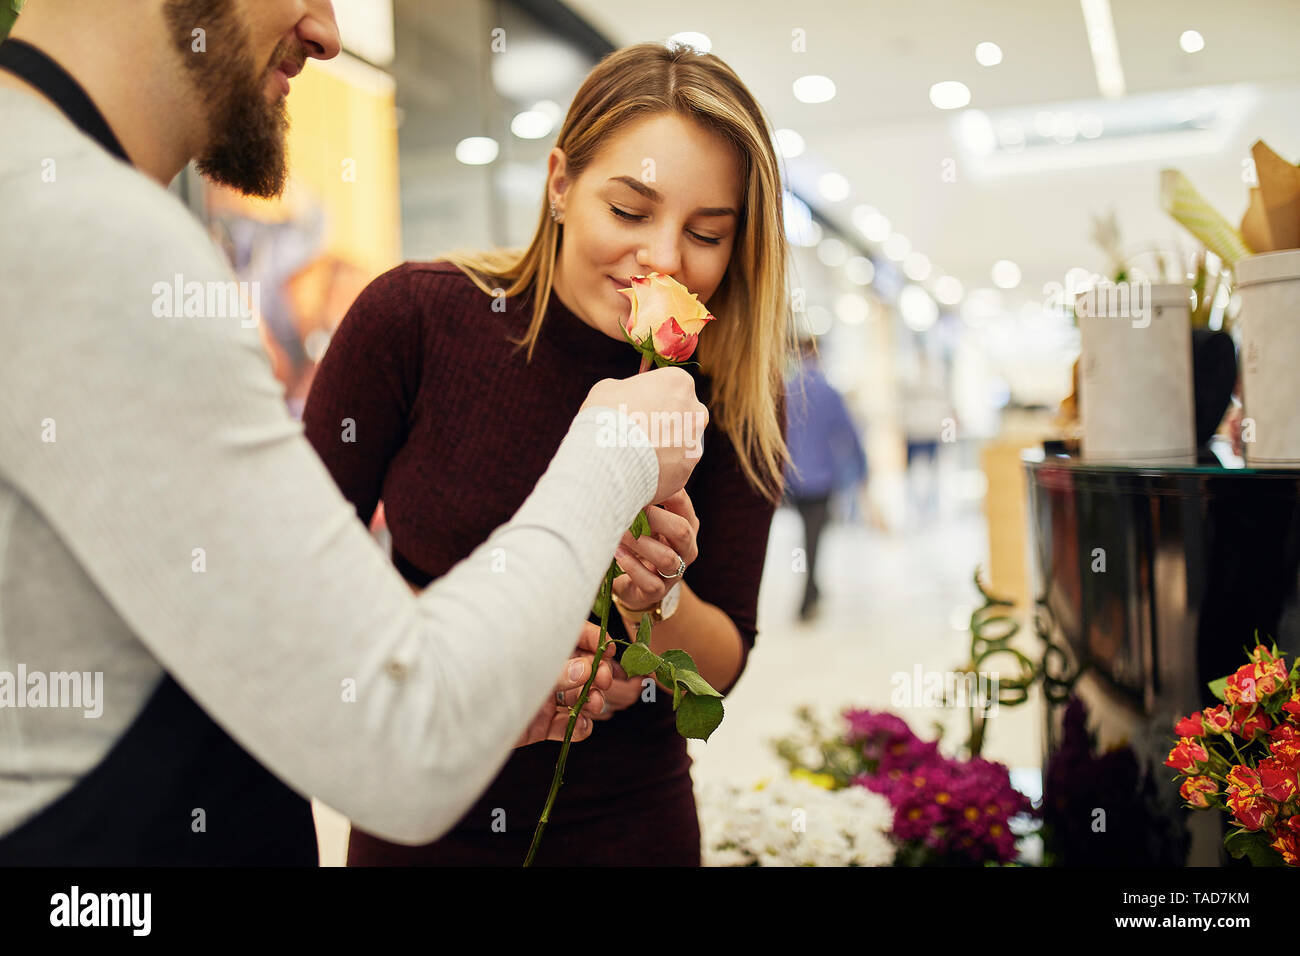 Laisser fleuriste fleurs à odeur client in flower shop Banque D'Images